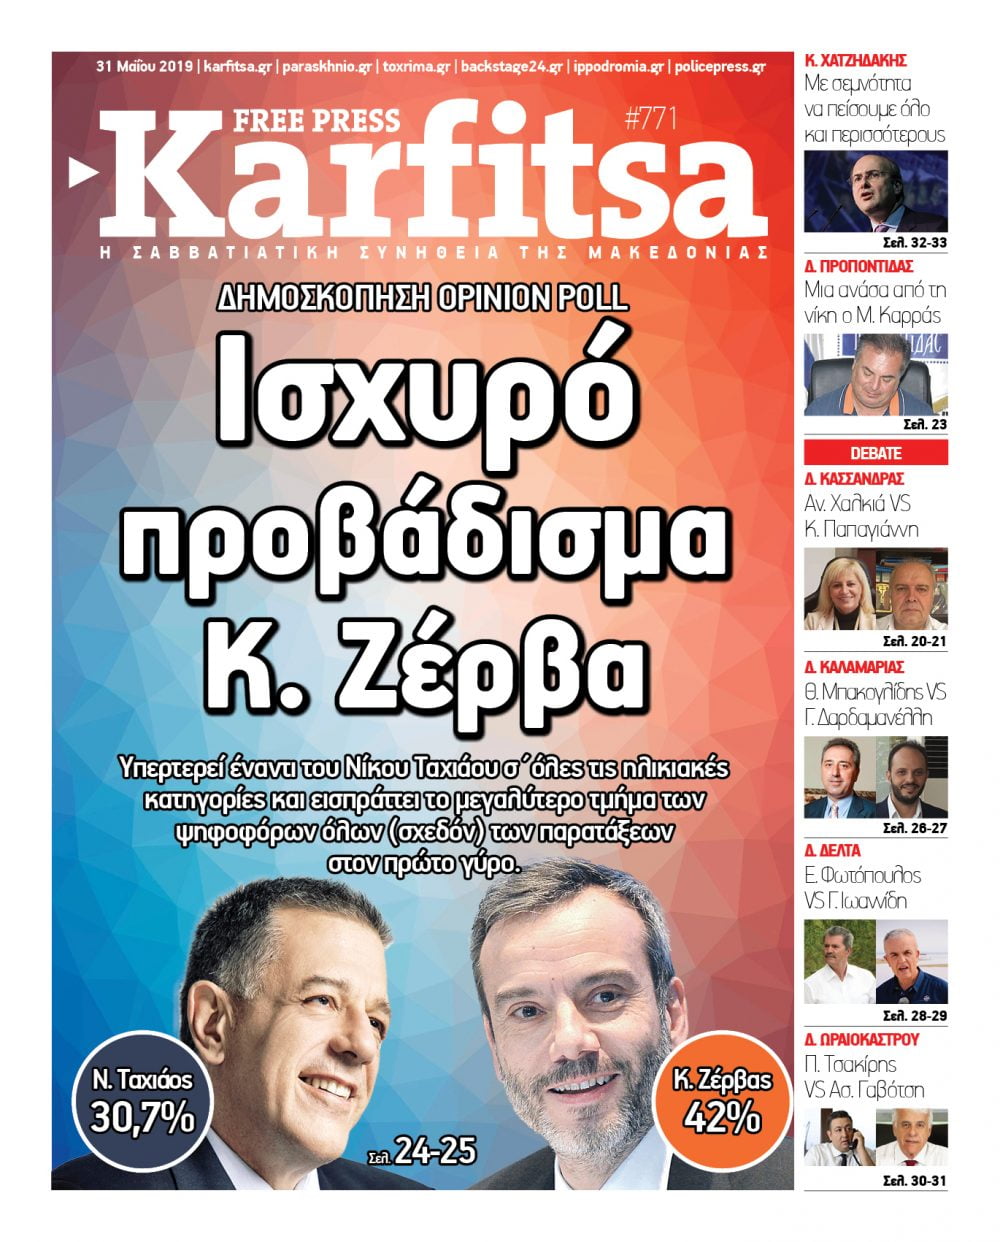 Διαβάστε σε ηλεκτρονική μορφή την τελευταία έκδοση της εφημερίδας Karfitsa